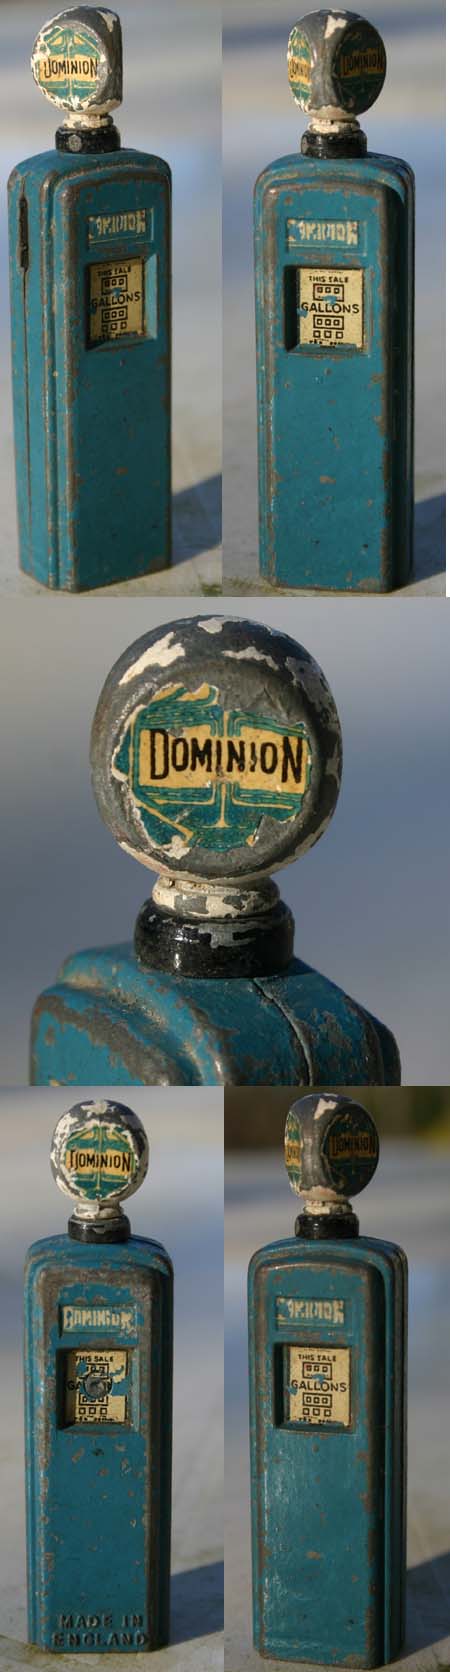 Dominion avec globe